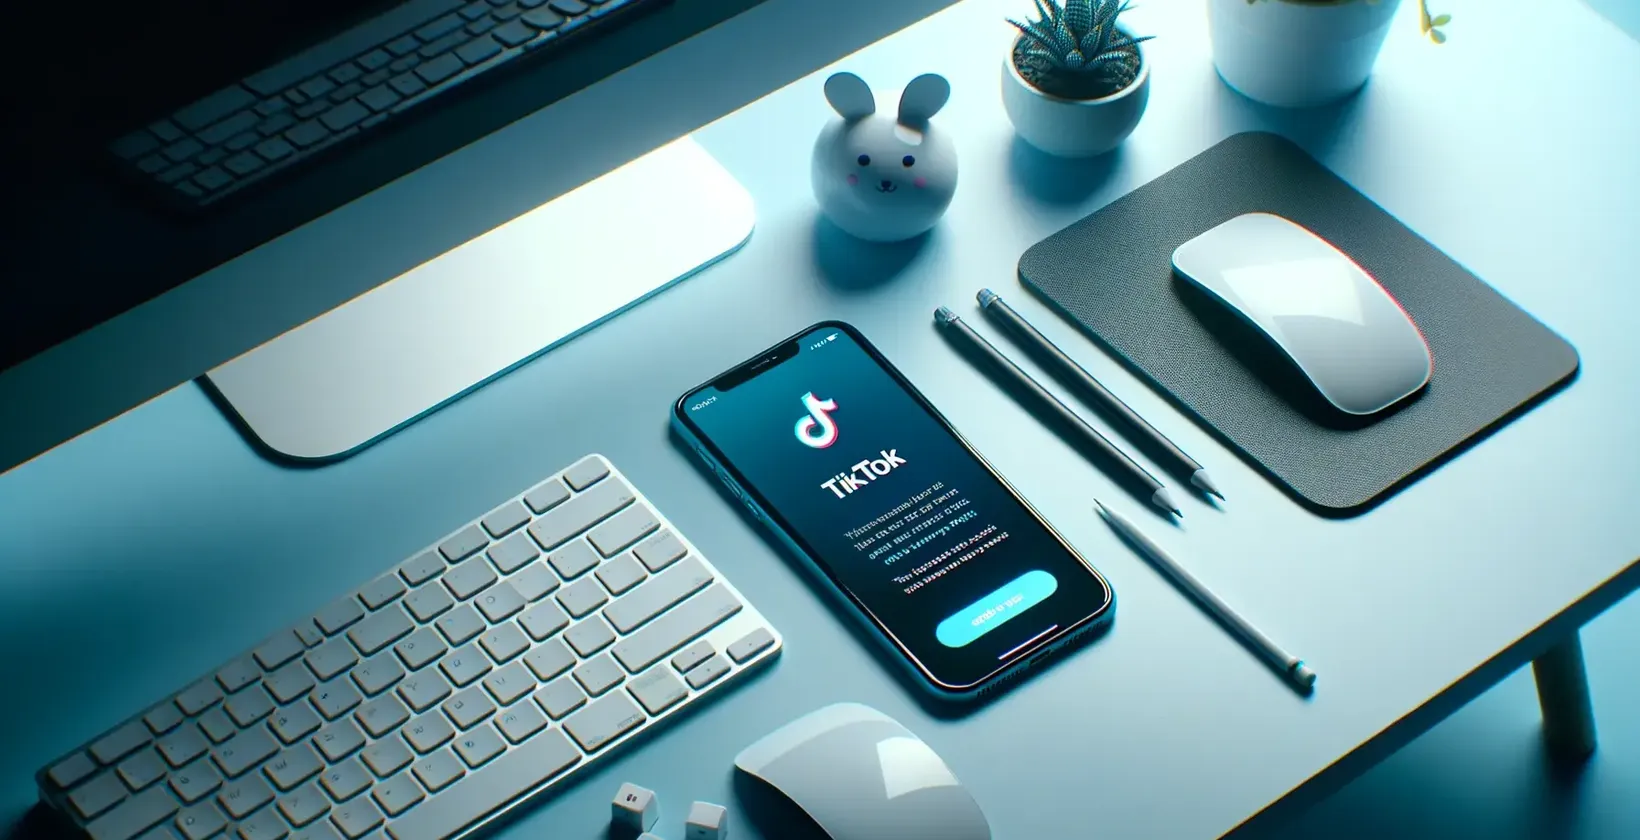 Smartphone med applikationen TikTok öppen, omgiven av tangentbord, mus och skrivbordsartiklar på ett bord med blå belysning.